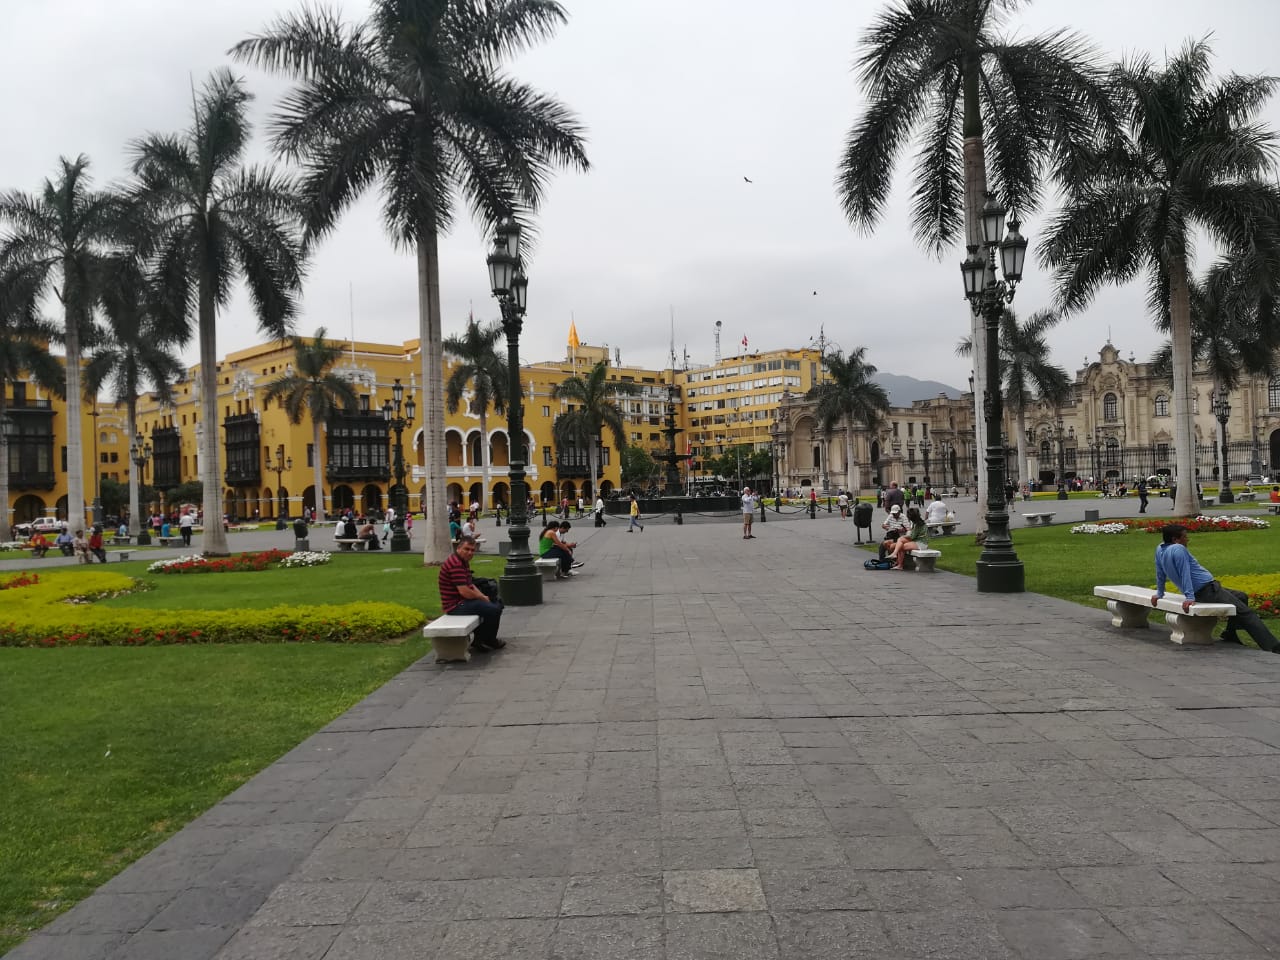 Peru / Plaza de armas